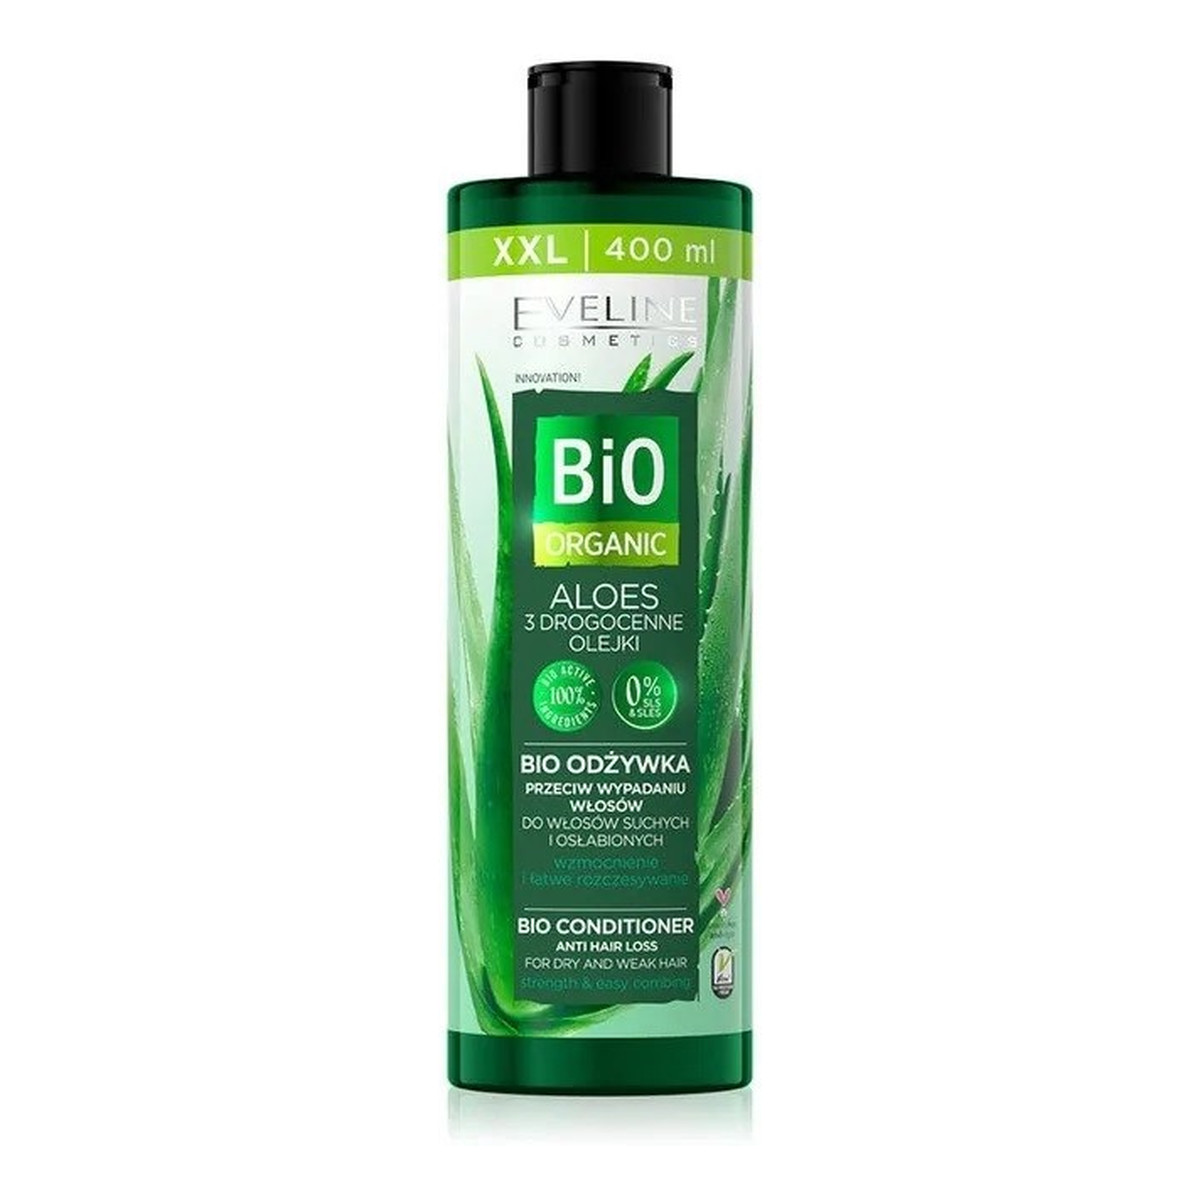 Eveline Bio Organic Aloes Bio Odżywka przeciw wypadaniu - włosy suche i osłabione 400ml